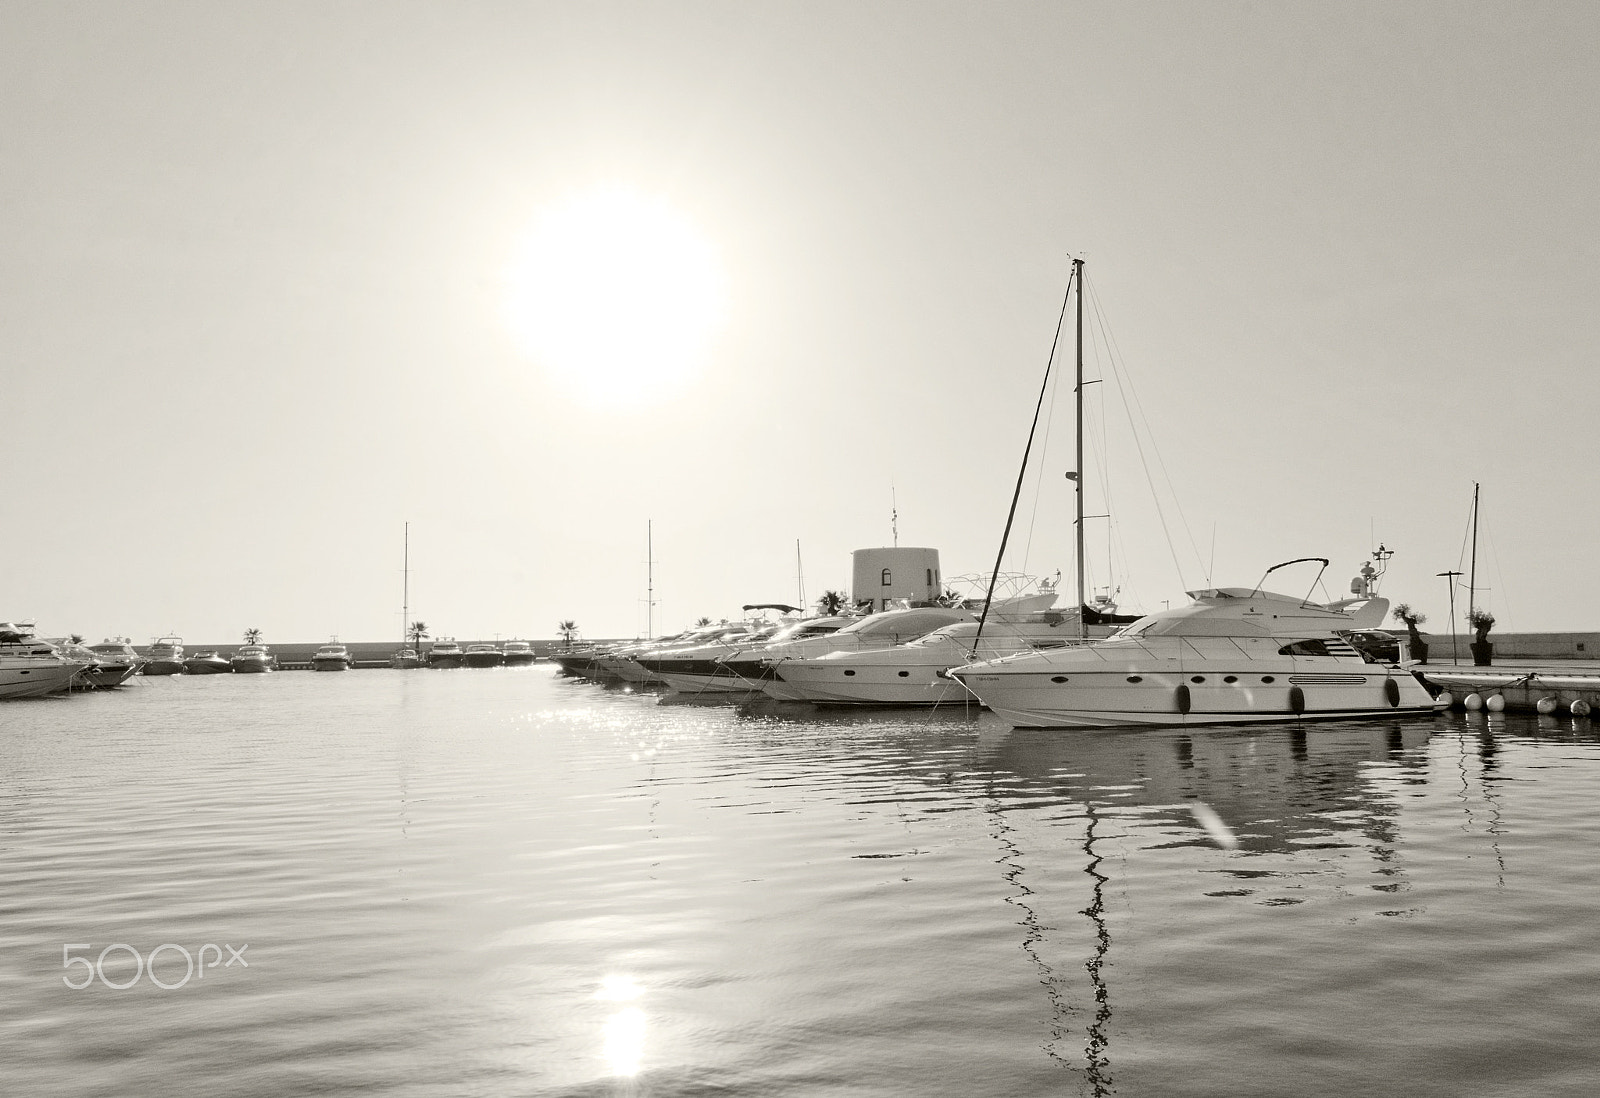 Nikon D7100 + AF Nikkor 20mm f/2.8 sample photo. Yachts and sailboats in santa eulalia photography